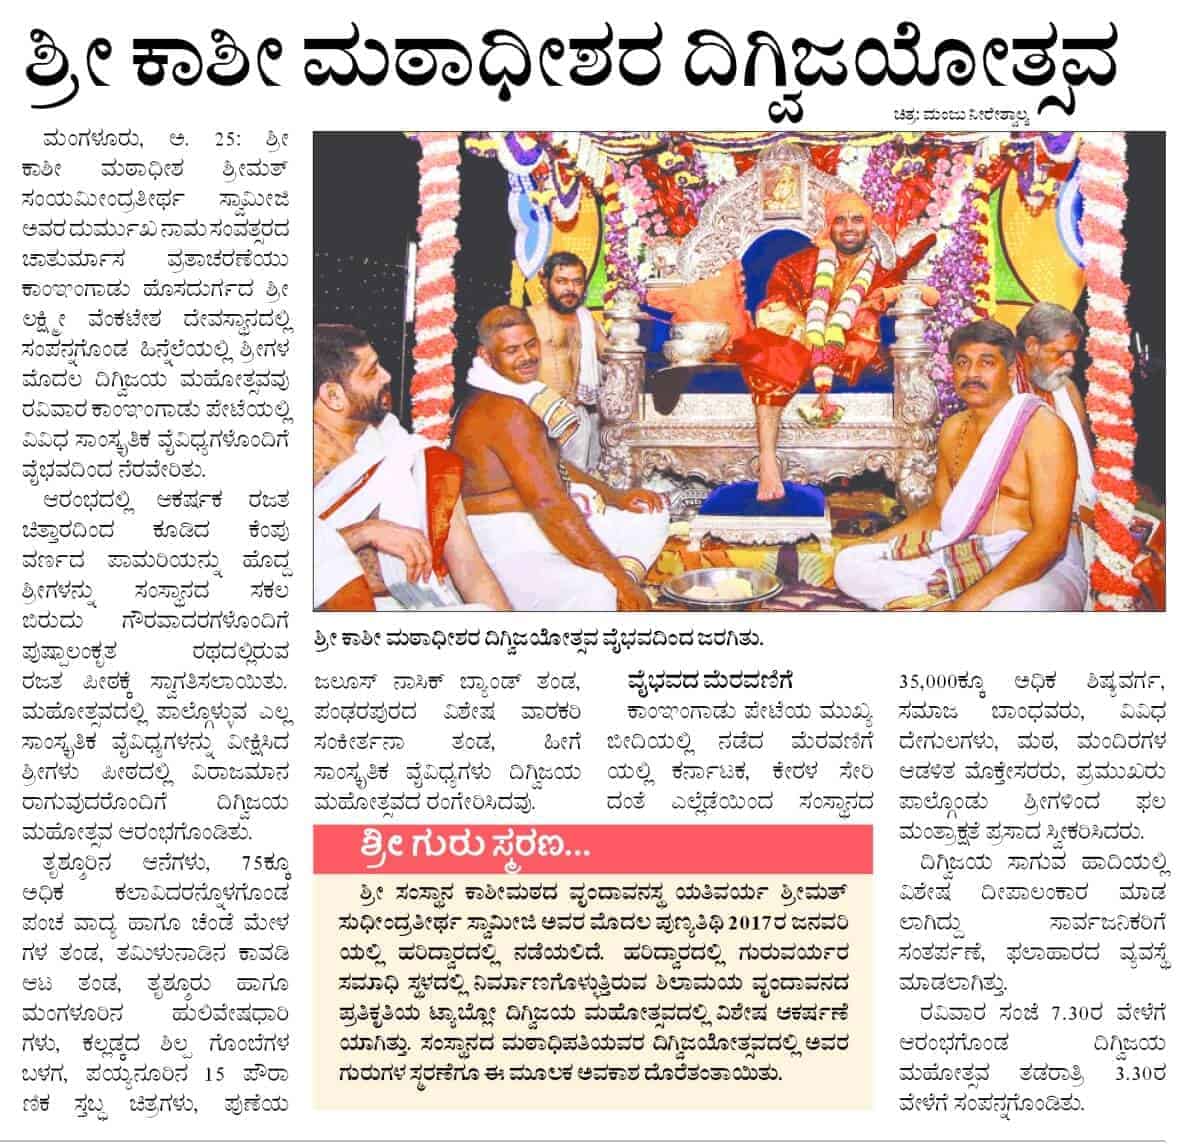 15th Chaturmas - Digvijaya Shobhayatra held in grandeur